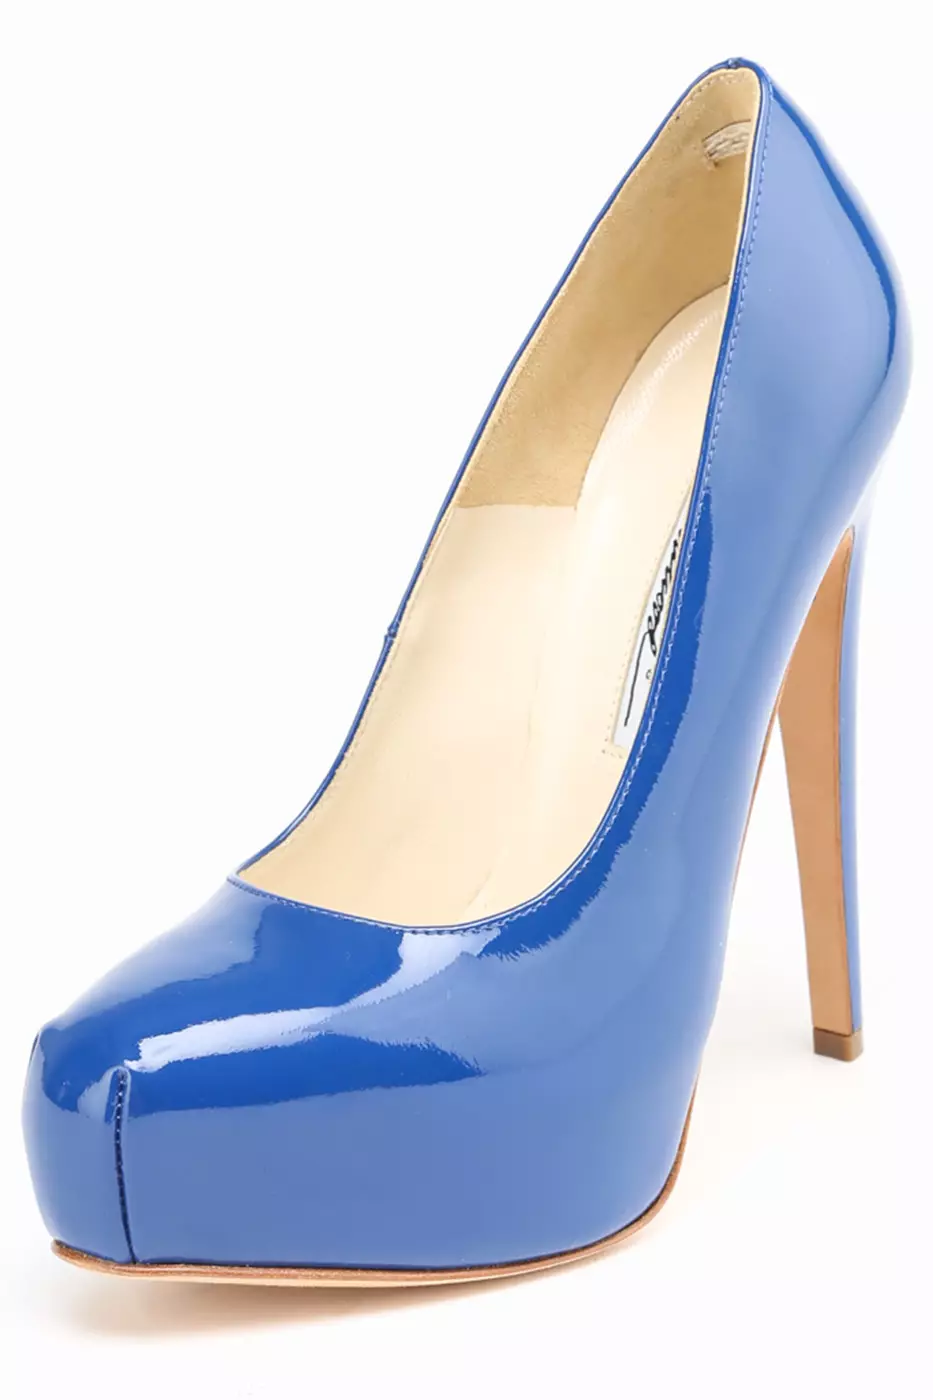 ლურჯი ფეხსაცმელი (56 ფოტო): რა უნდა ატაროს ლურჯი ფერის მოდელები და ლურჯი ძირები, ლამაზი სურათები 2367_33